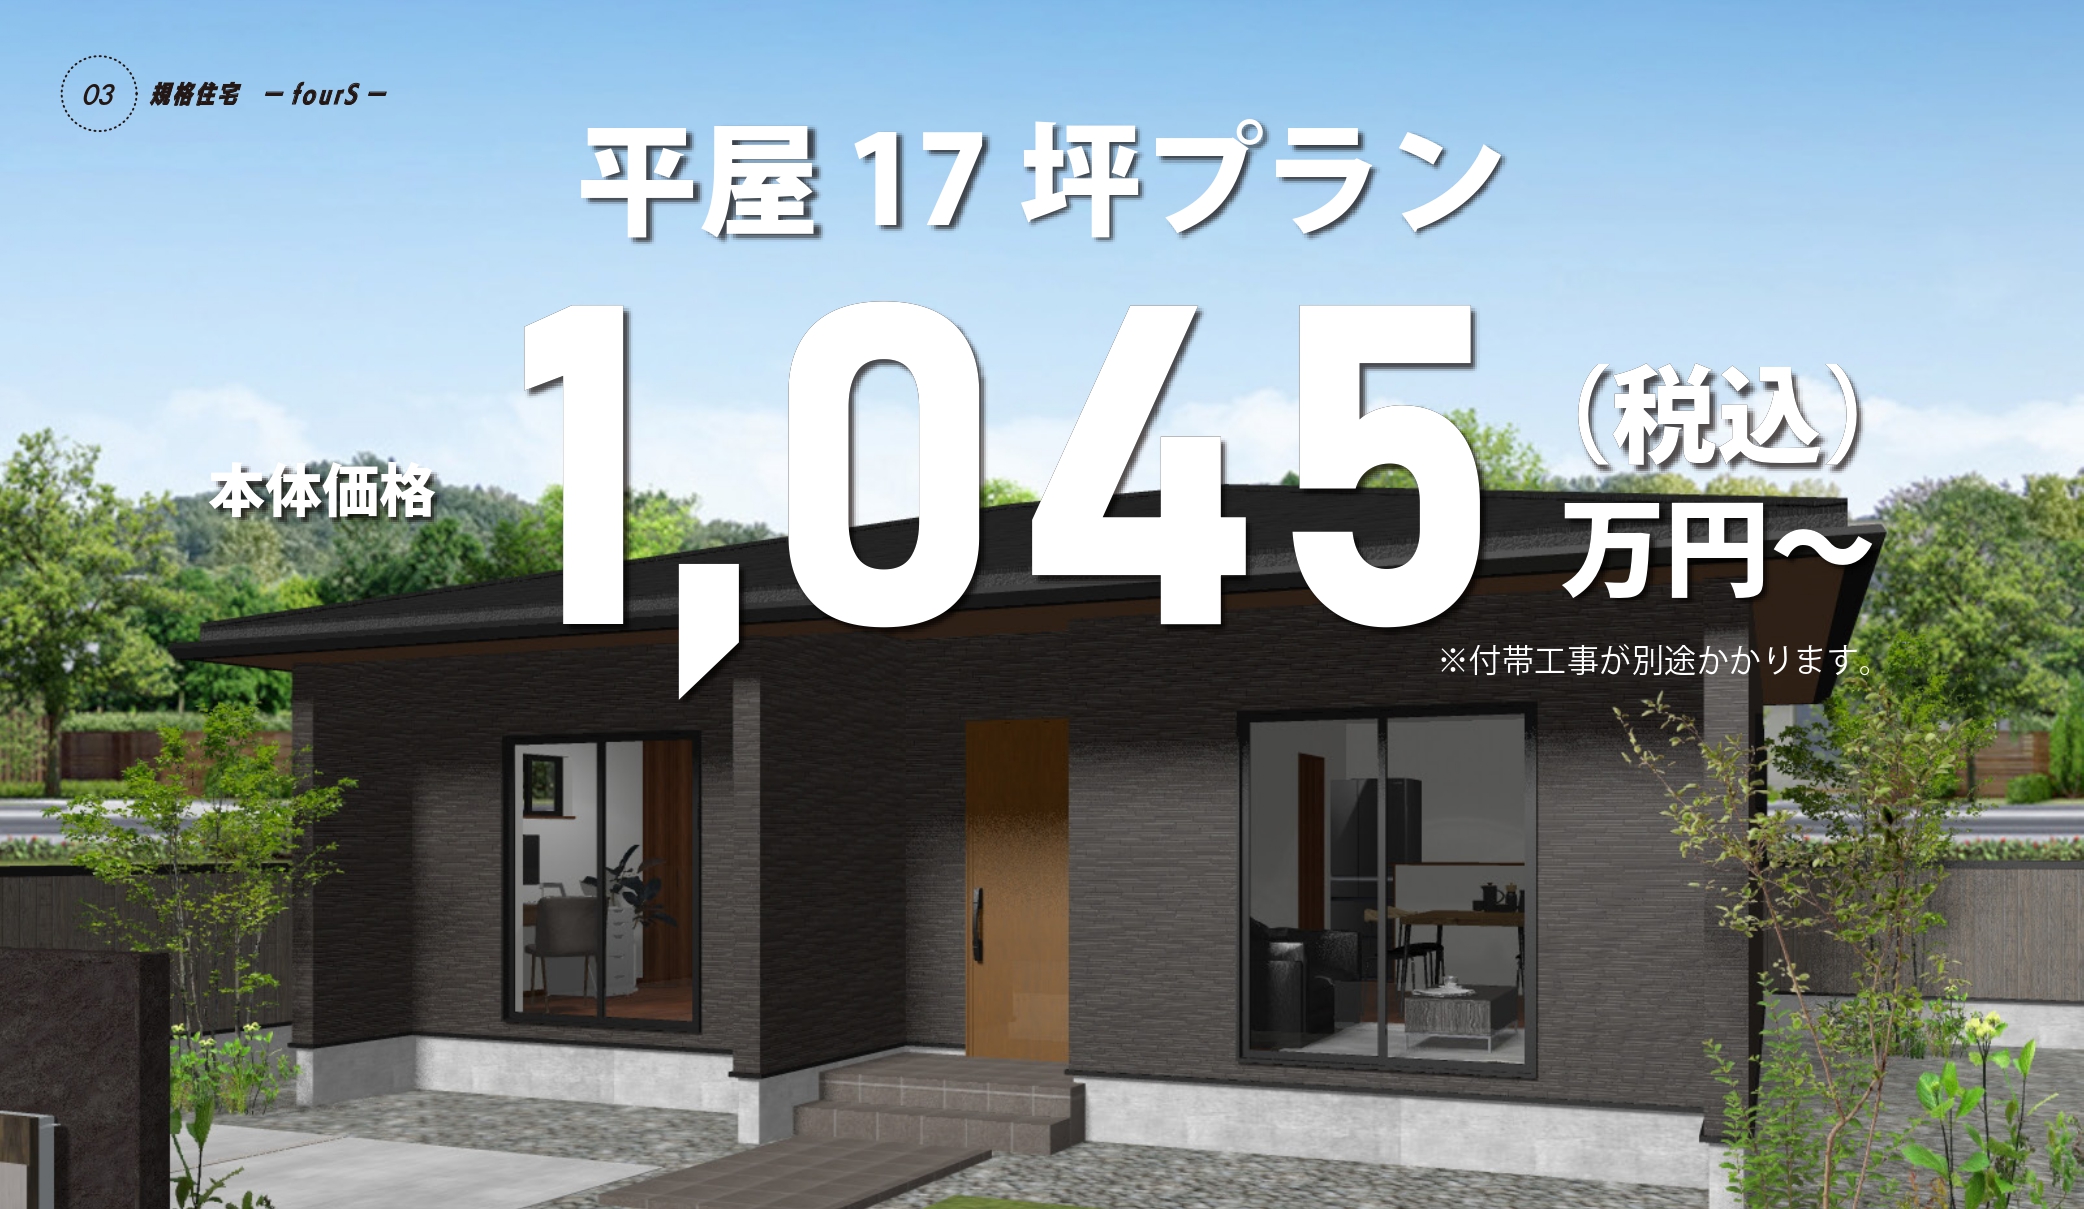 規格住宅 fourS 平屋17坪～ 950万円(税別)～ 1045万円(税別)～